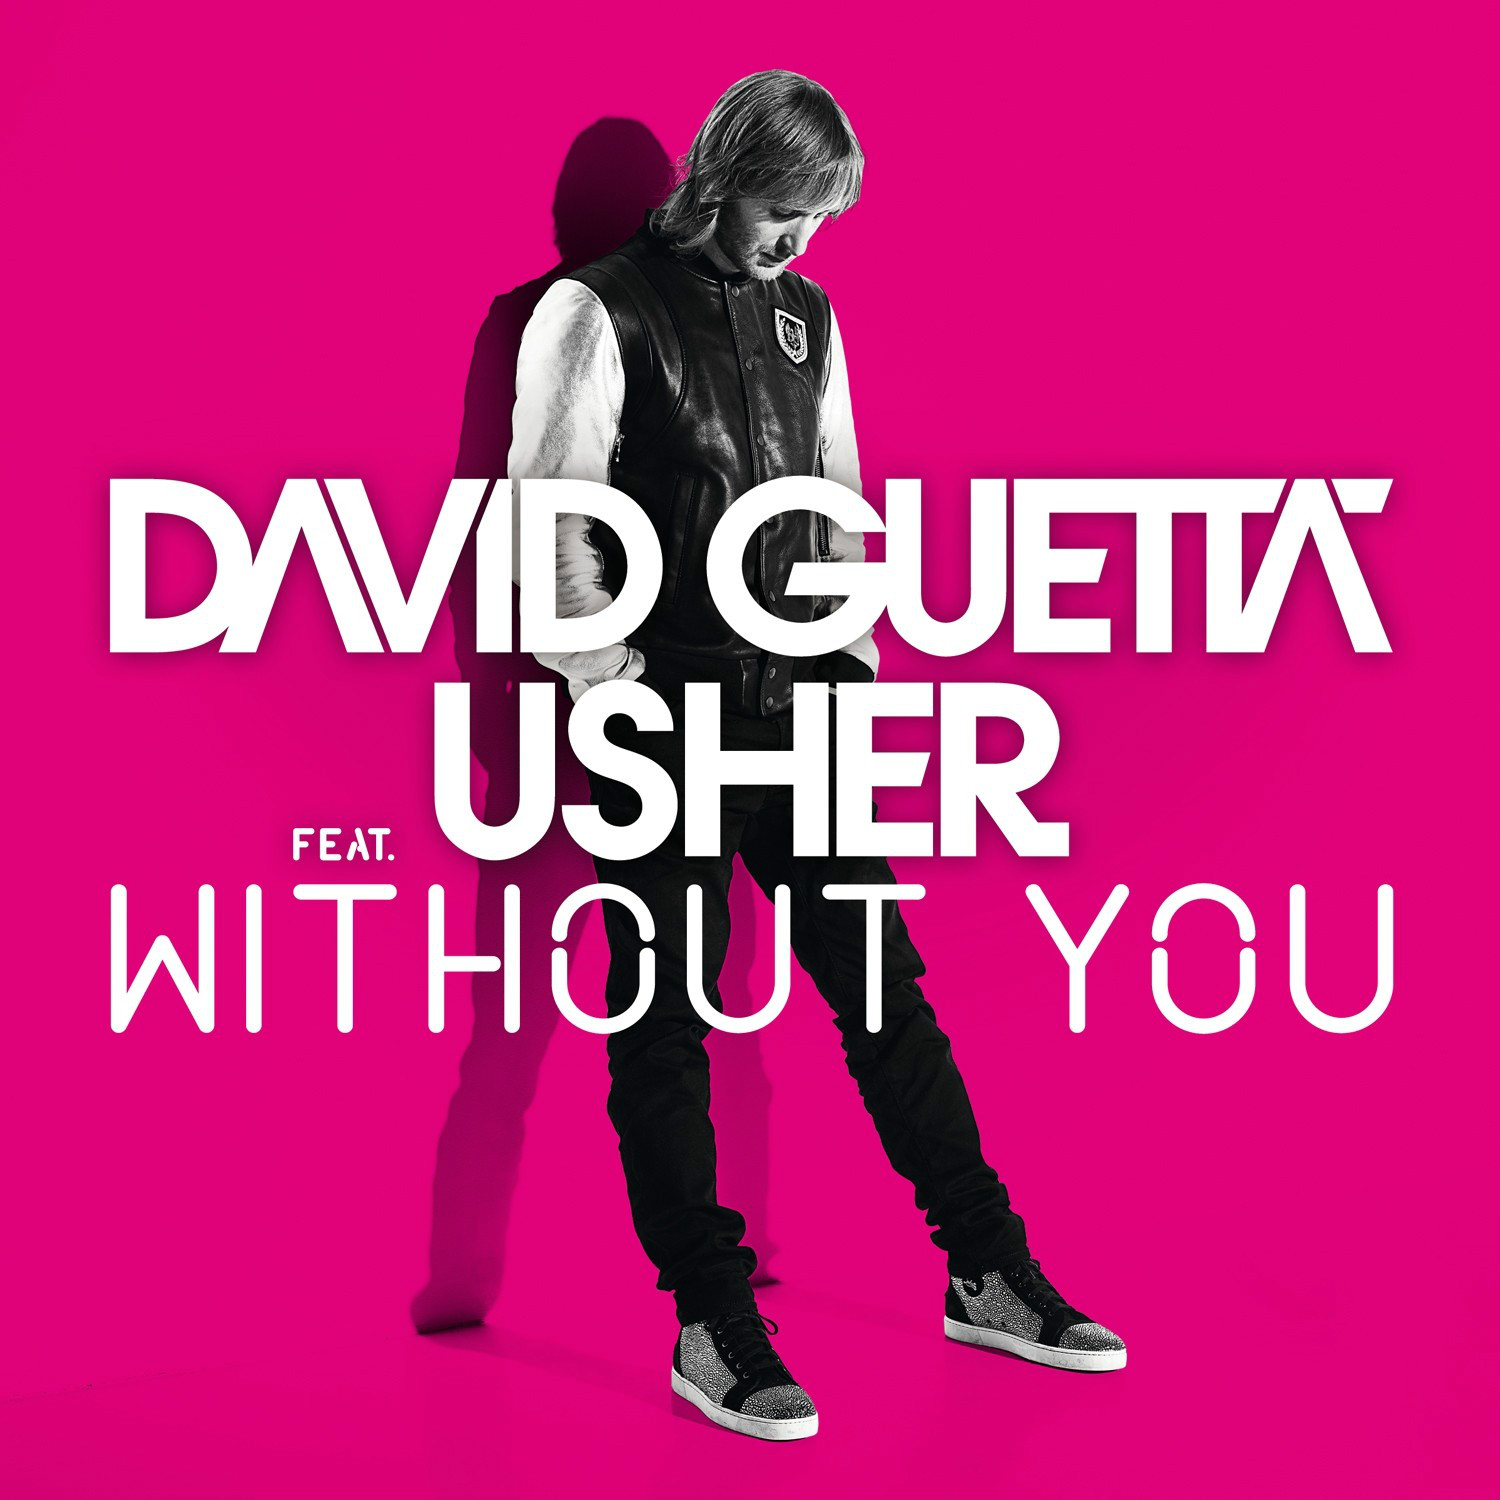 Without you(亞瑟小子Usher與頂級DJ David Guetta合作歌曲)